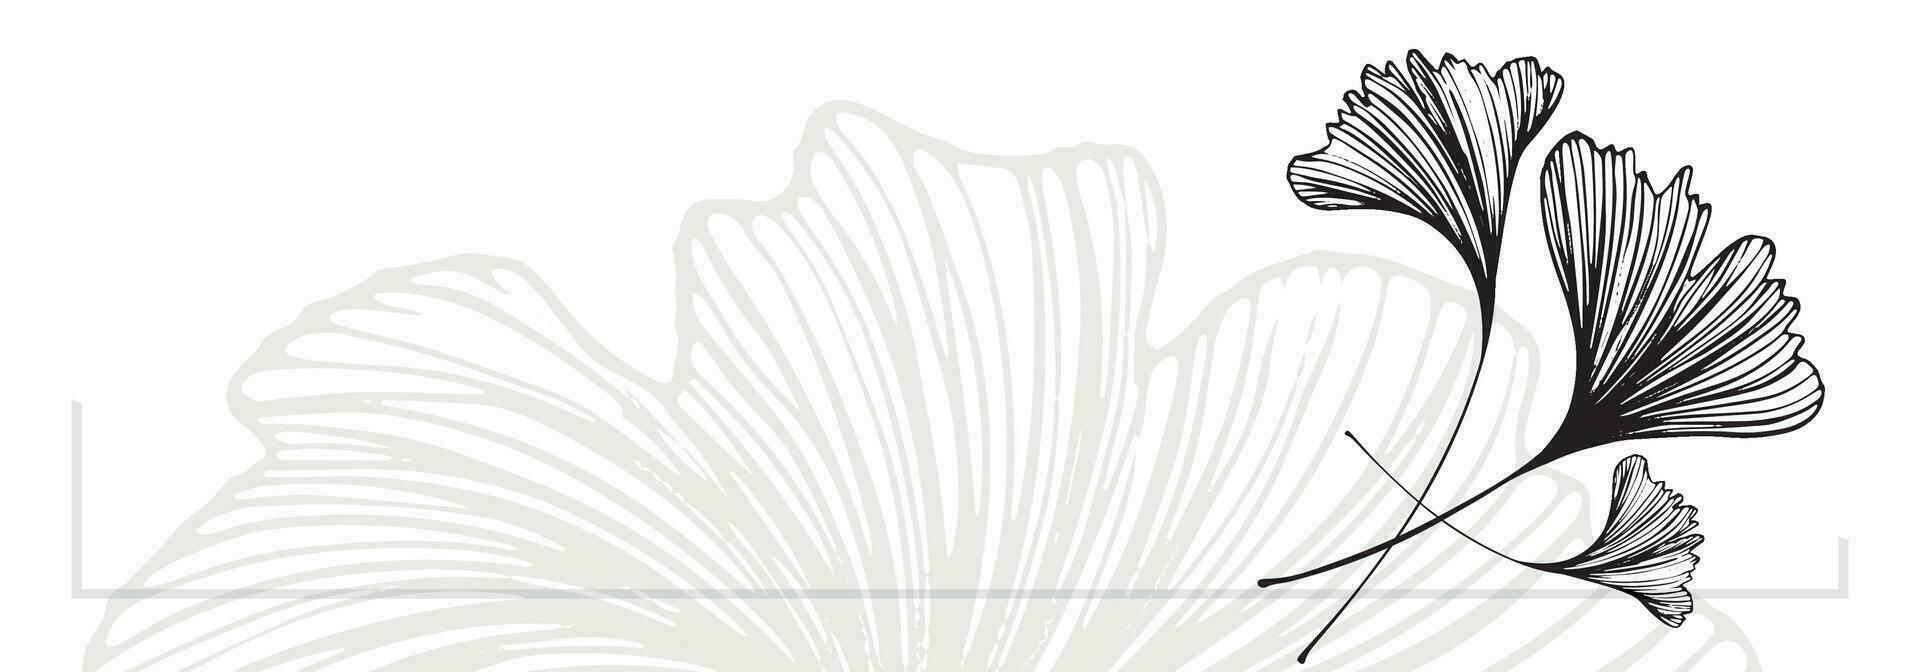 gingko löv dekorativ gräns är markerad på en vit bakgrund. en mönster av löv. vektor illustration. för natur, eco och design. ritad för hand växter, en ram för en vykort.